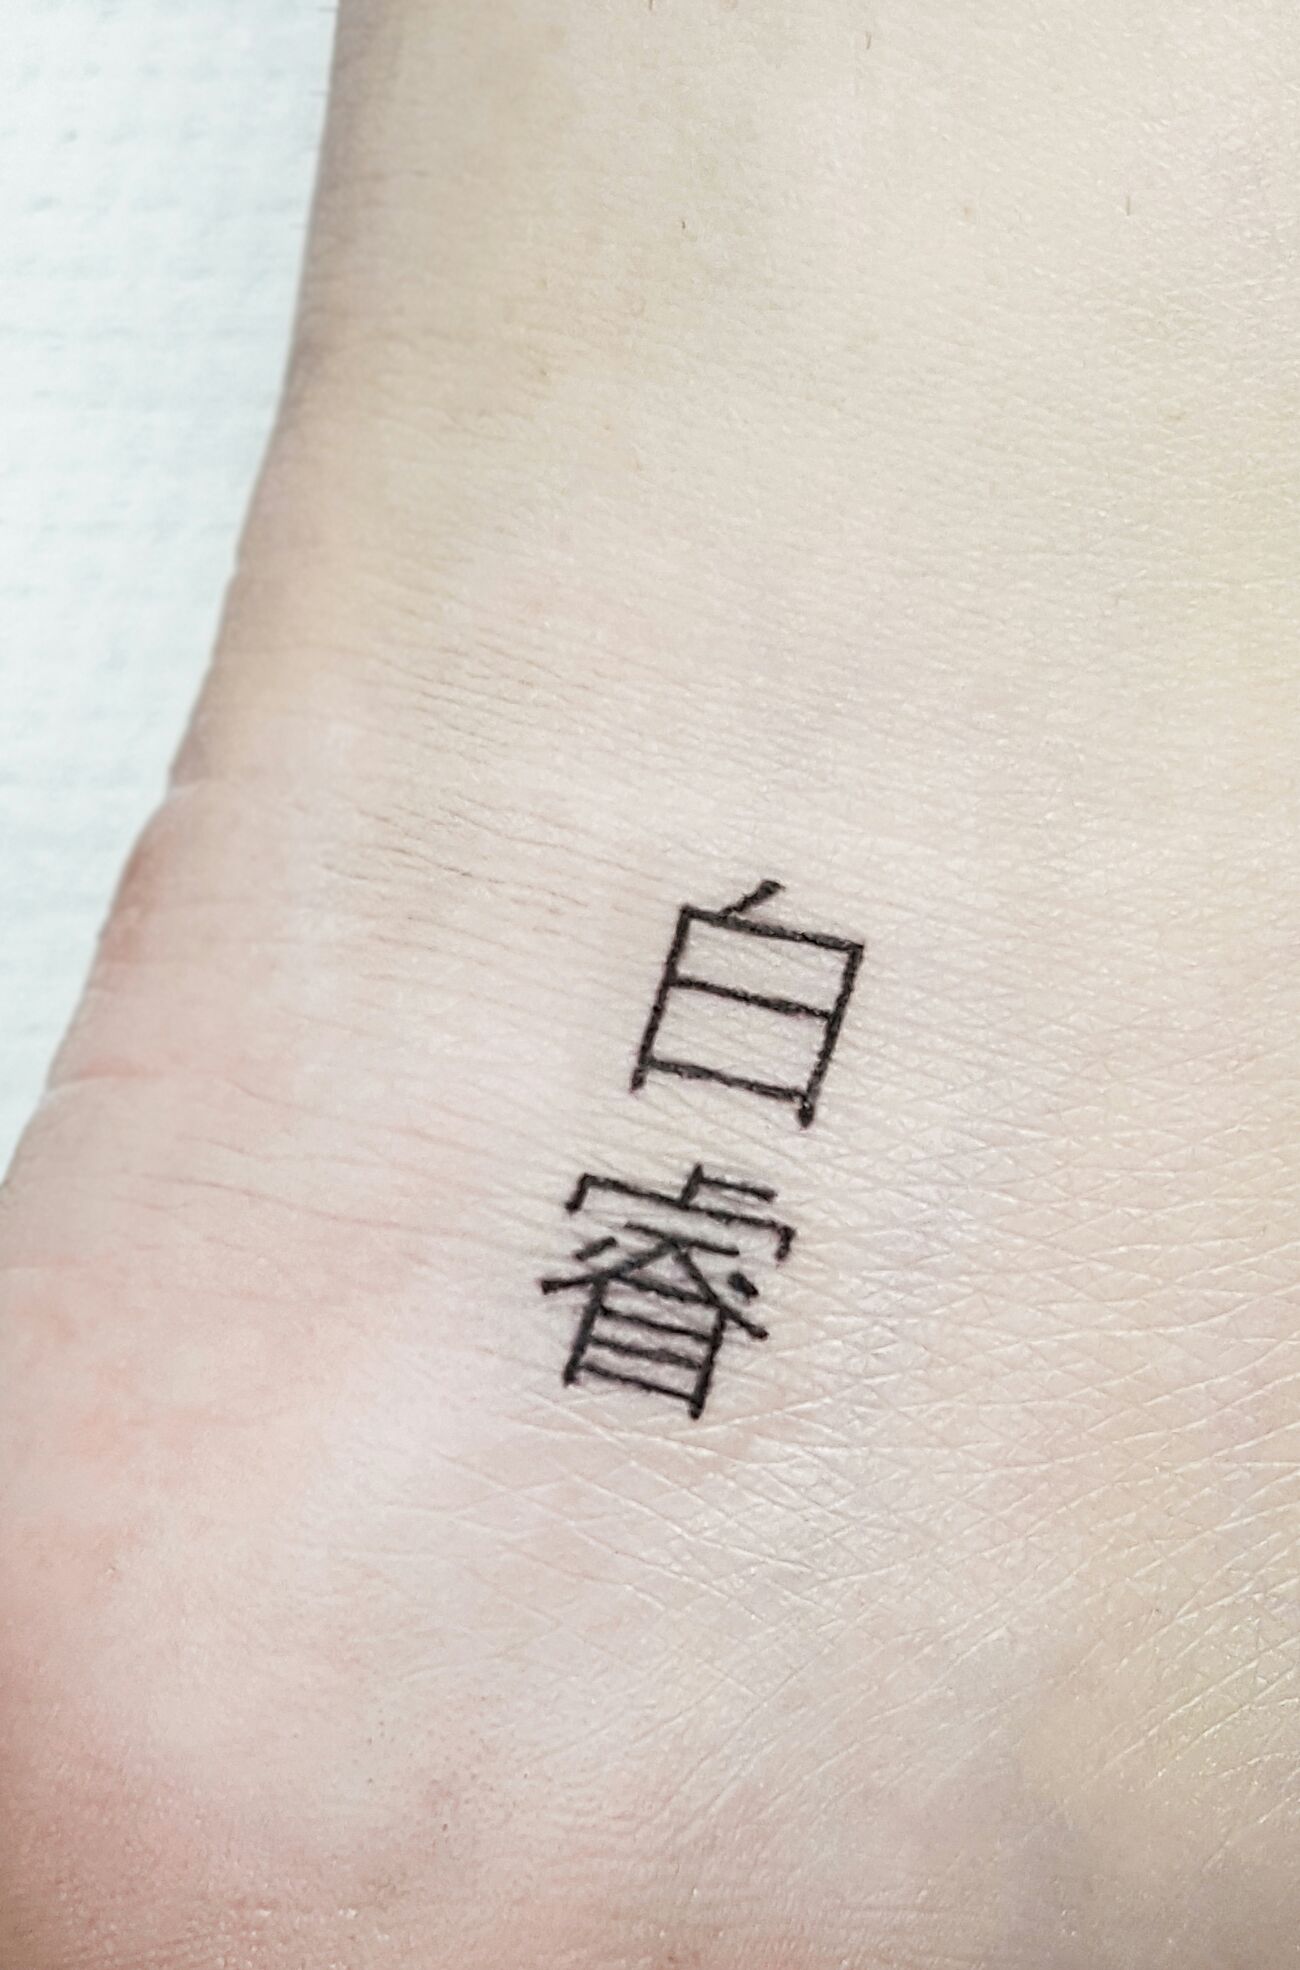 美女脚踝表达爱意的汉字纹身图案